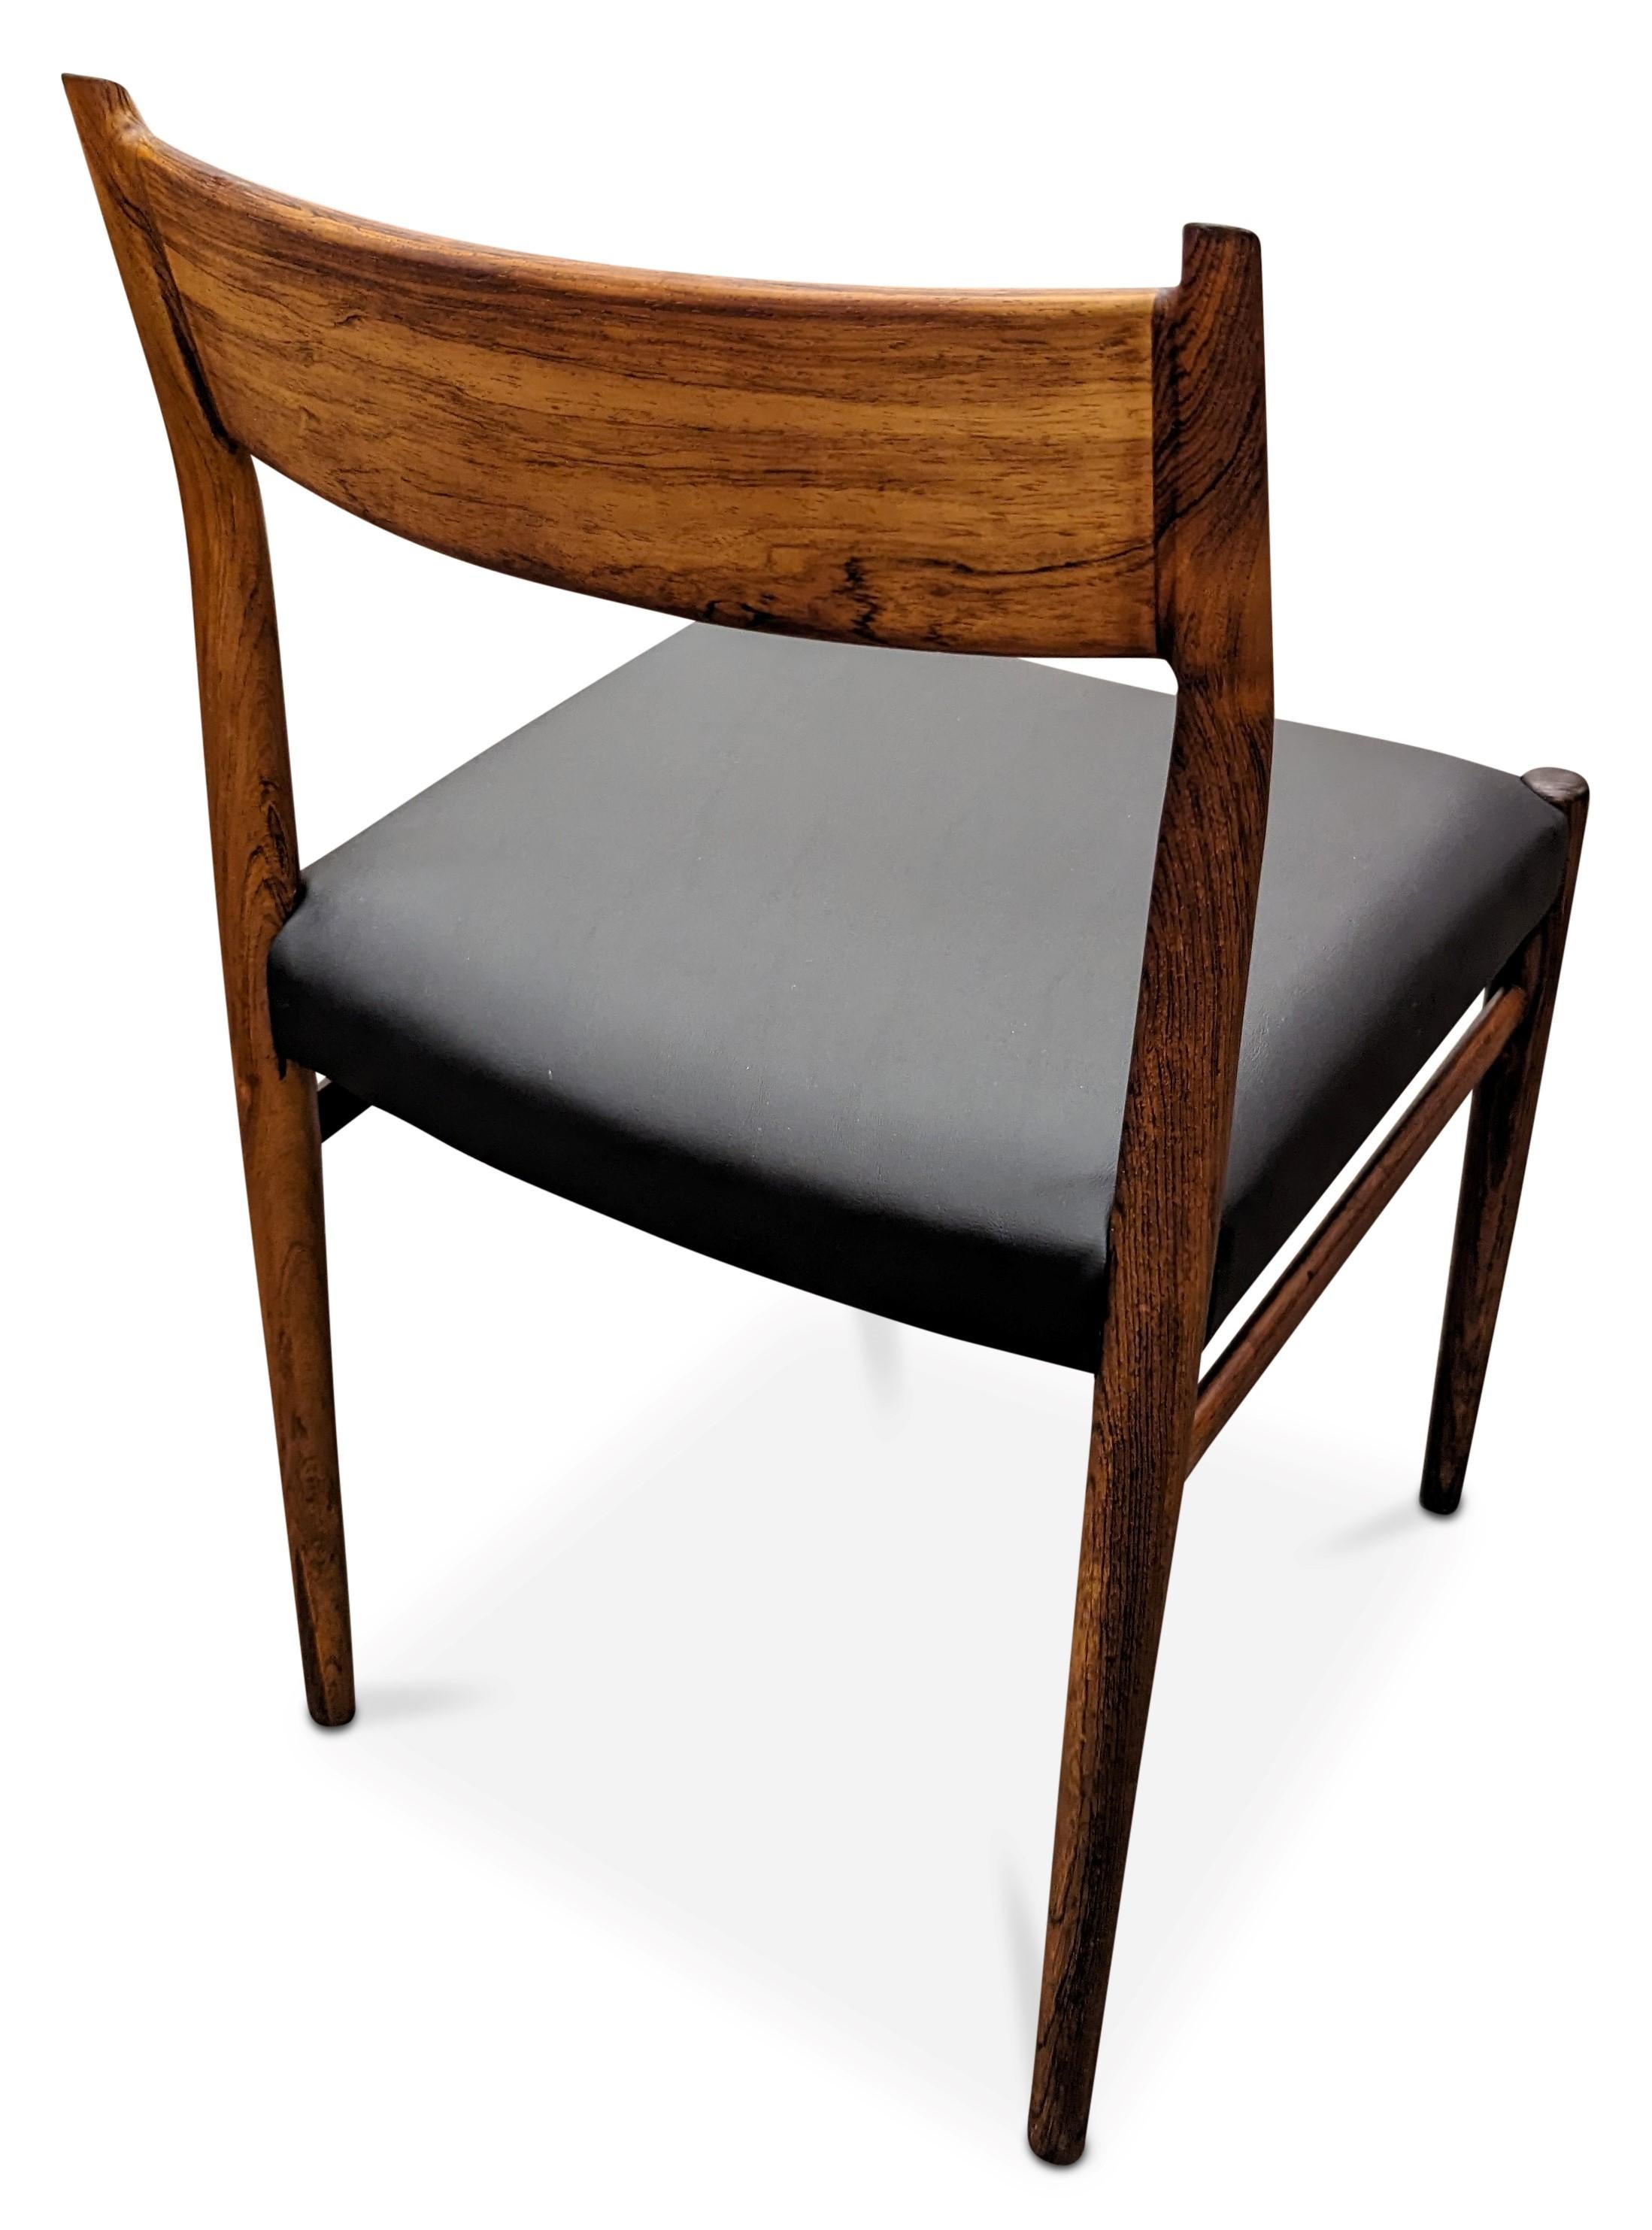 Vintage Danish Arne Vodder for Sibast Mobler Rosewood Dining Chair - 082316 1